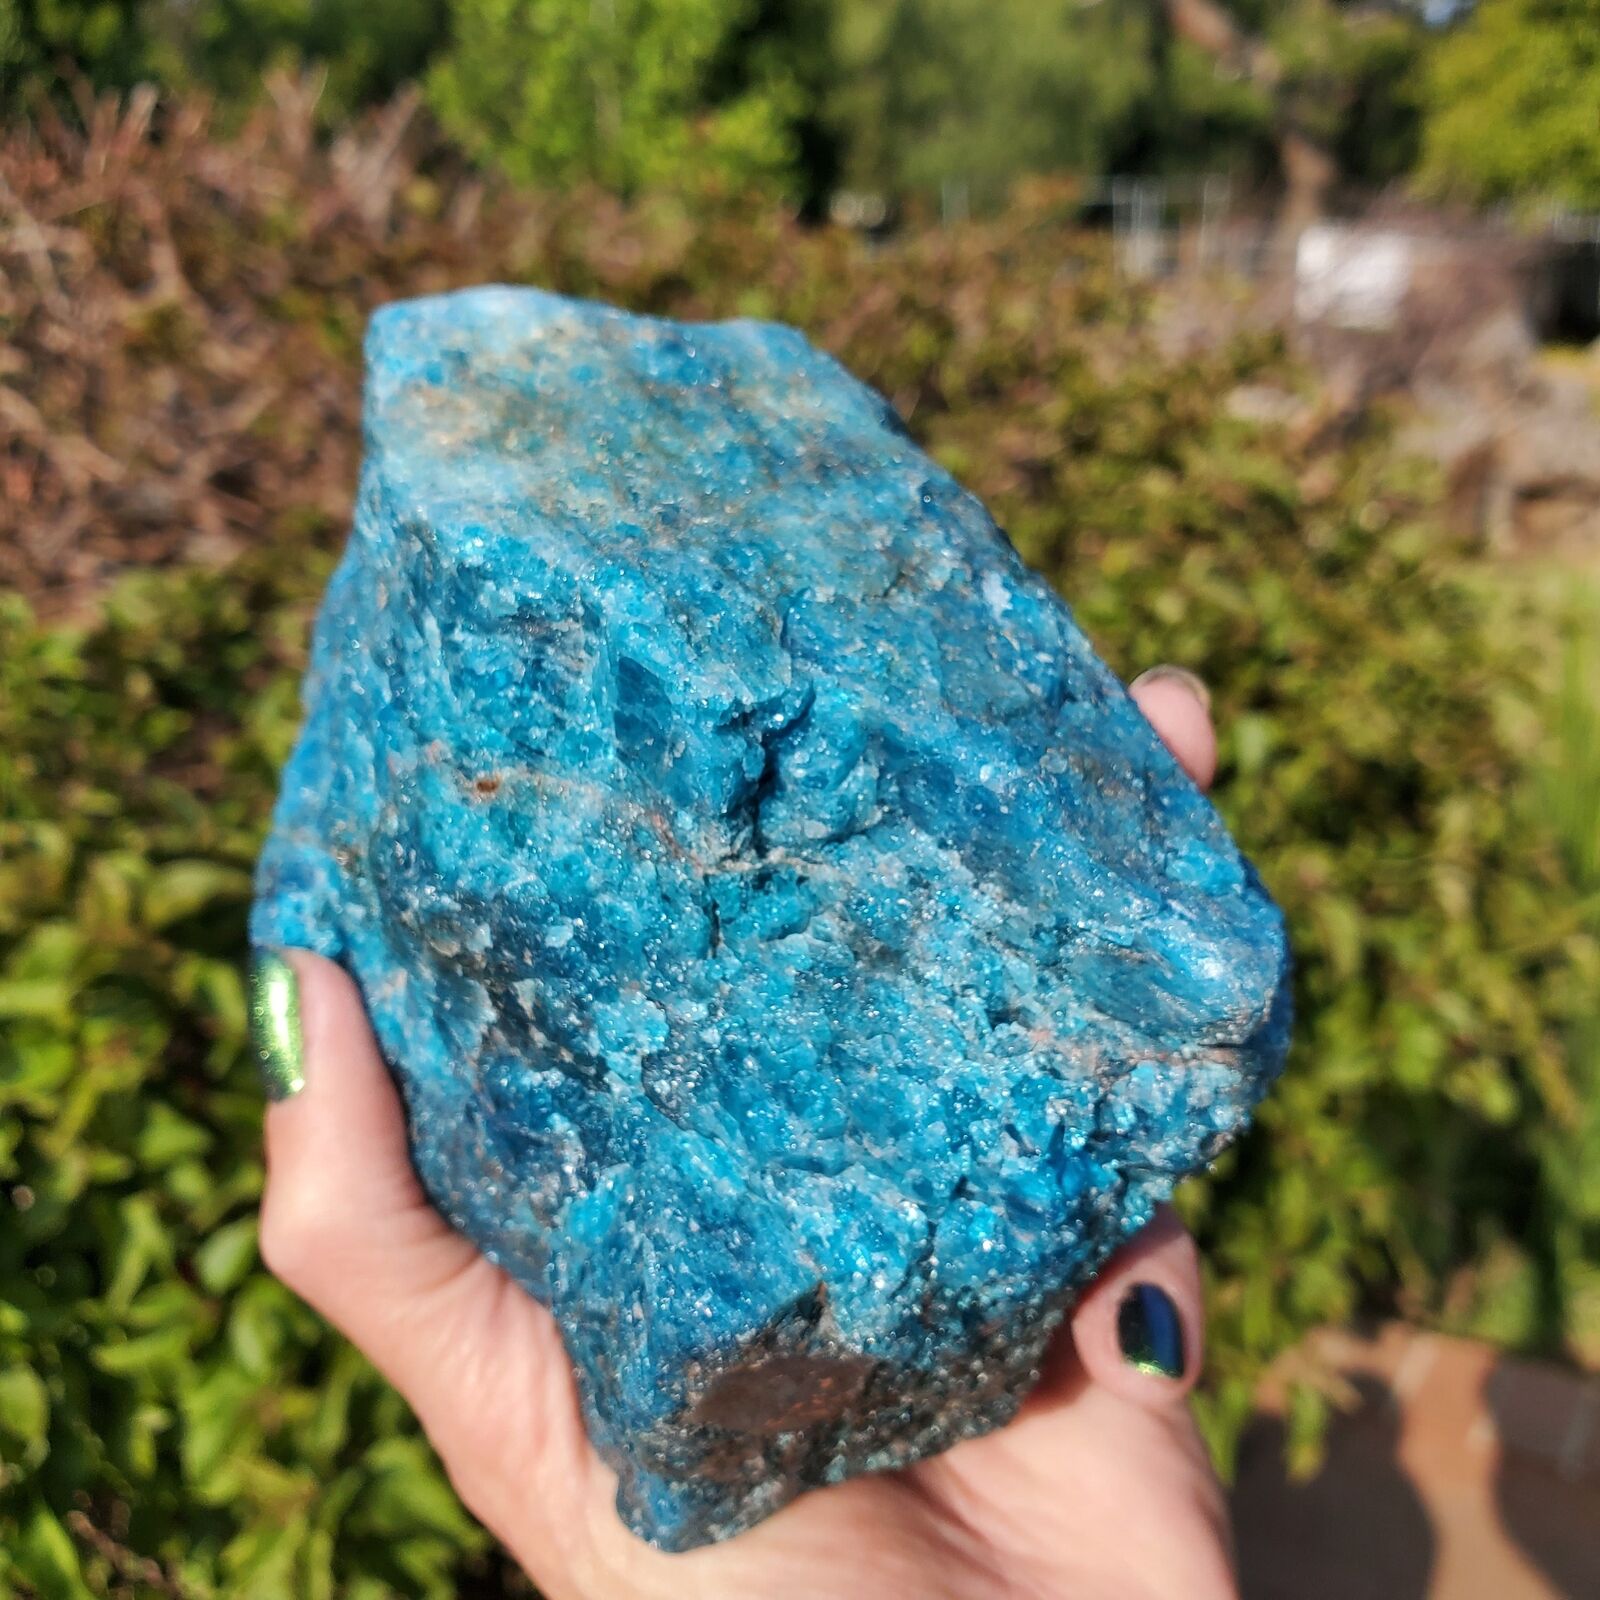 Gemmy Blue Raw Apatite Crystal Rough Stone Rock Bright Blue | 1290 Grams | 2lbs